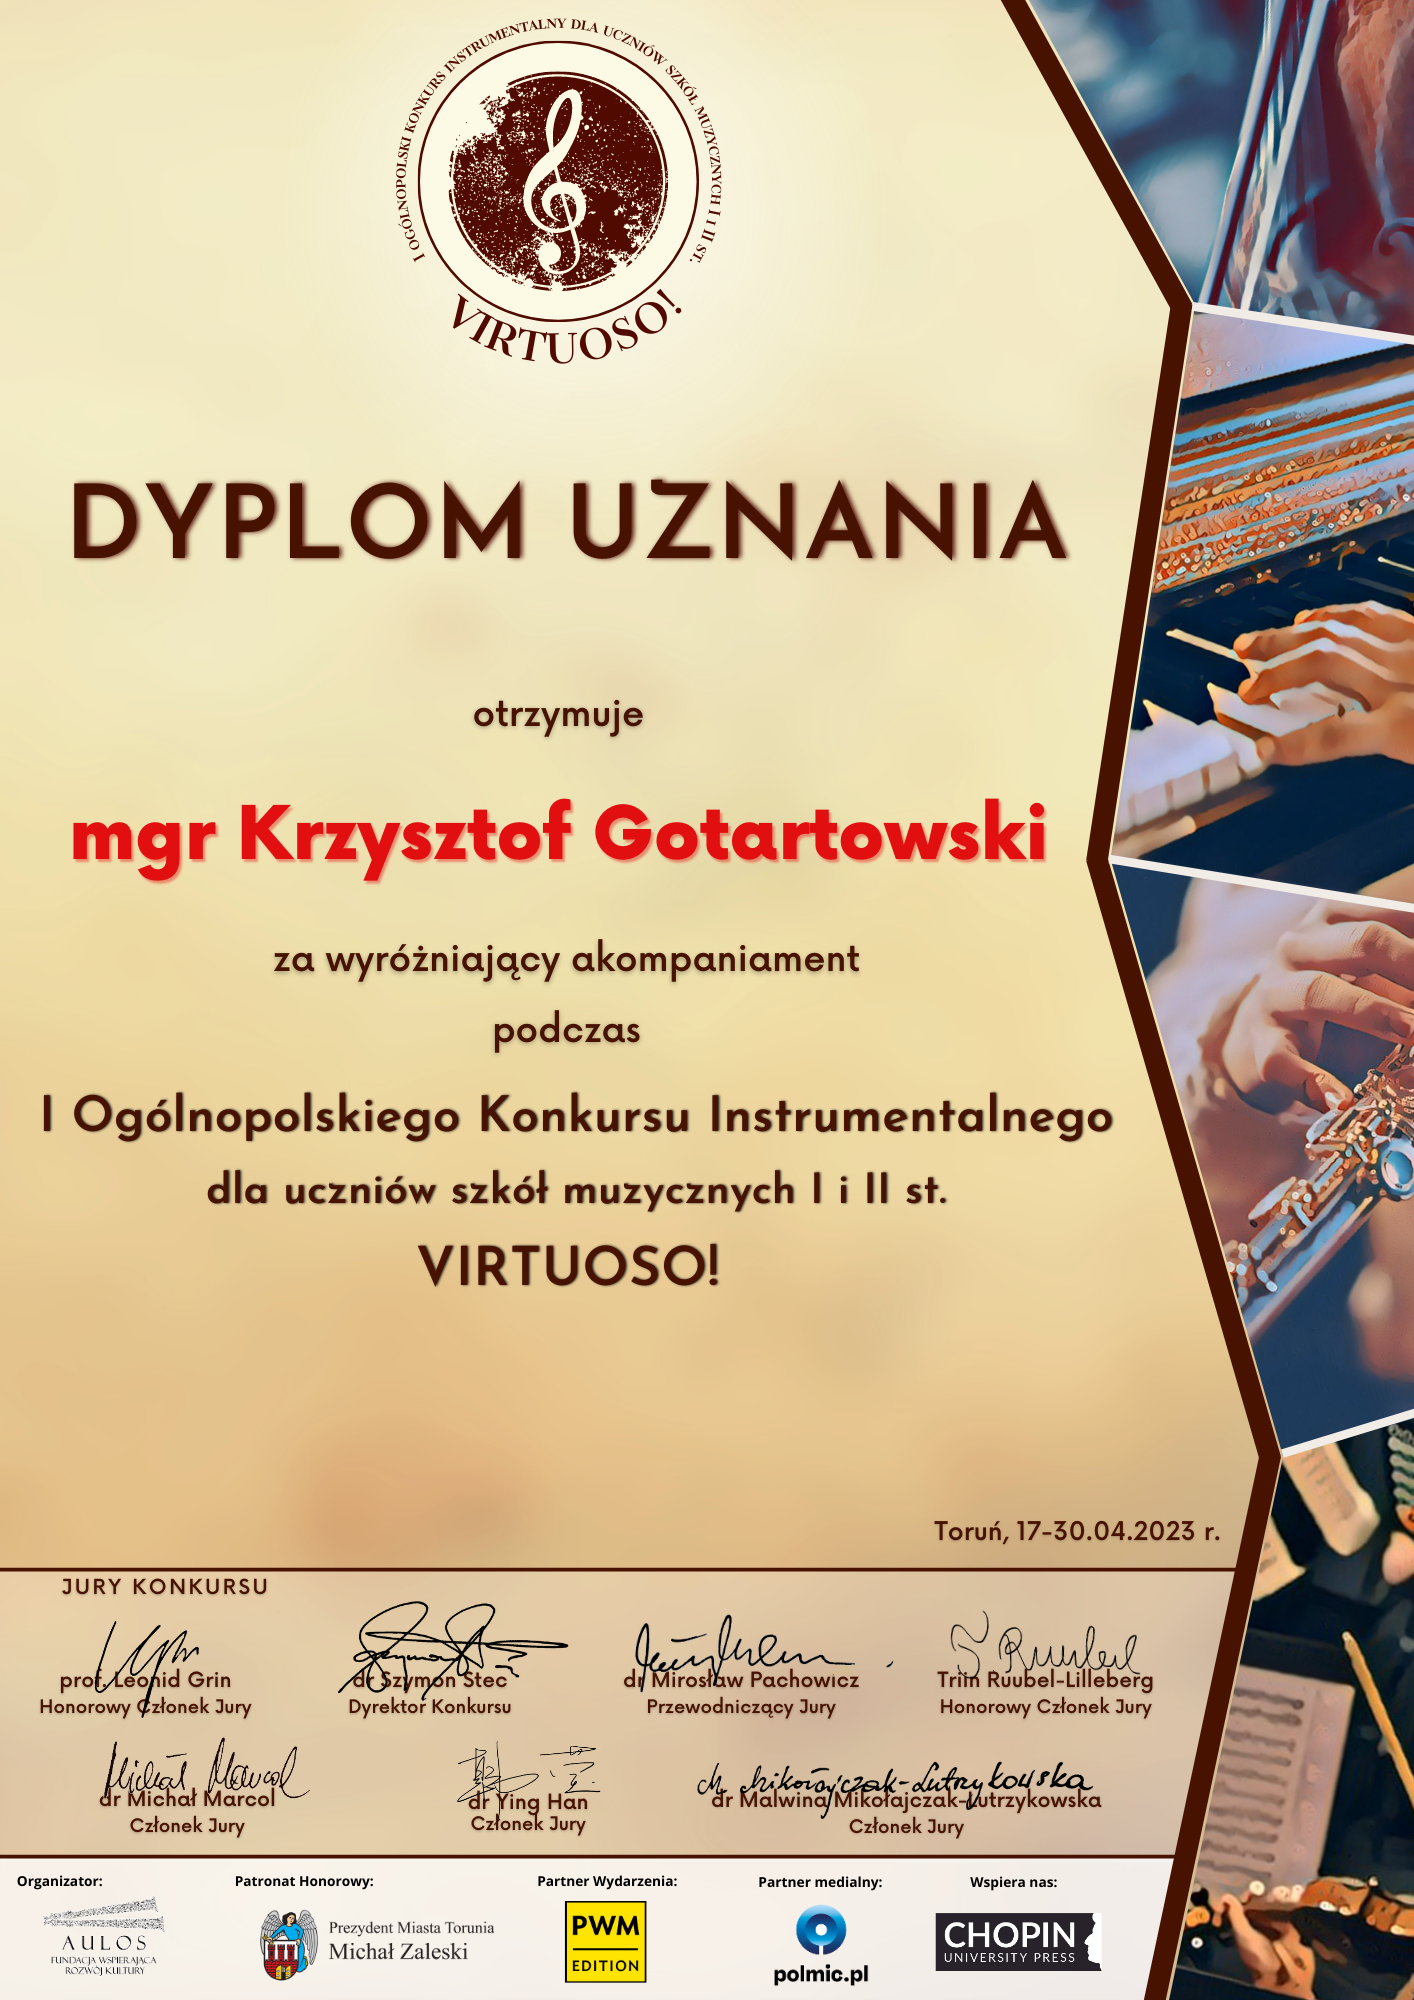 Dyplom uznania umieszczony jest na takim samym tle jak plakat informujący o wydarzeniu. mgr Krzysztof Gotartowski zdobył dyplom za wyróżniający akompaniament podczas I Ogólnopolskiego Konkursu Instrumentalnego dla uczniów szkół Muzycznych I i II st VIRTUOSO!